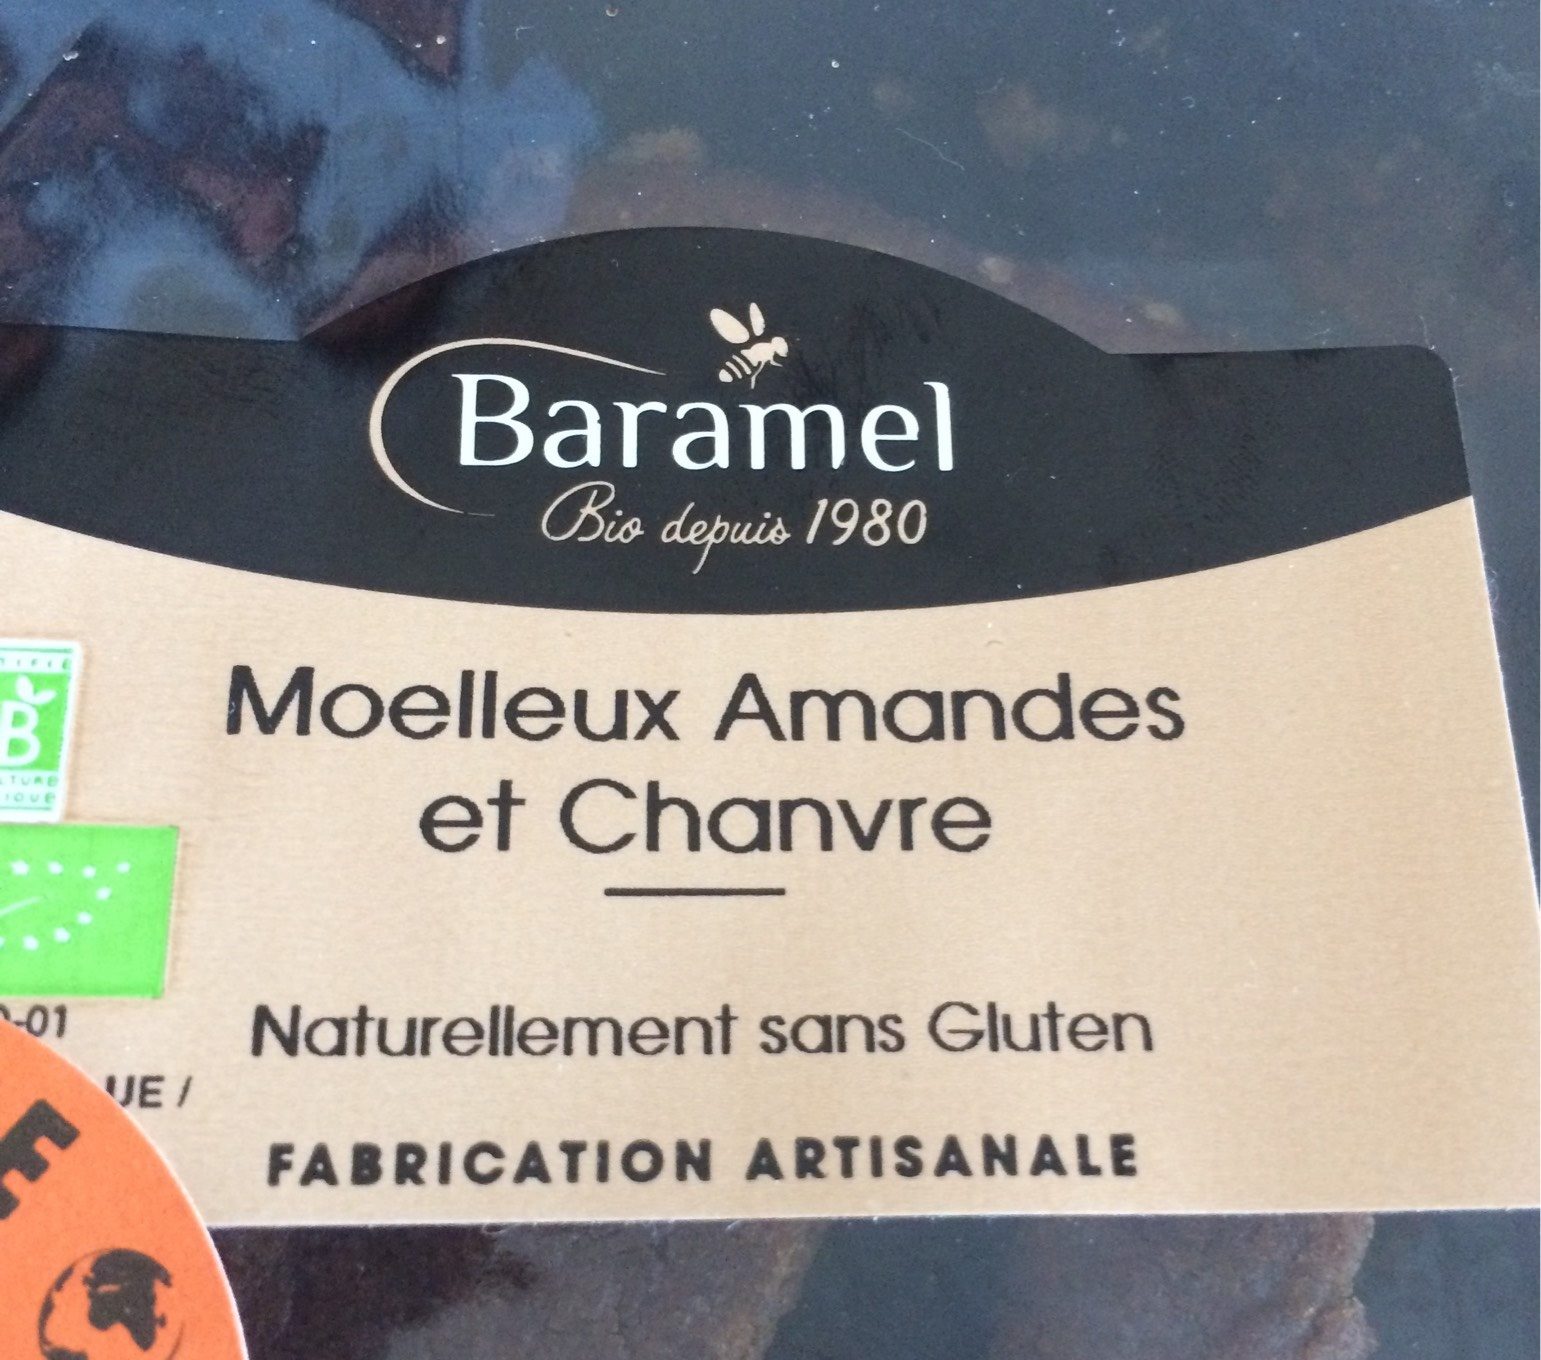 Moelleux Amandes et Chanvre - Product - fr